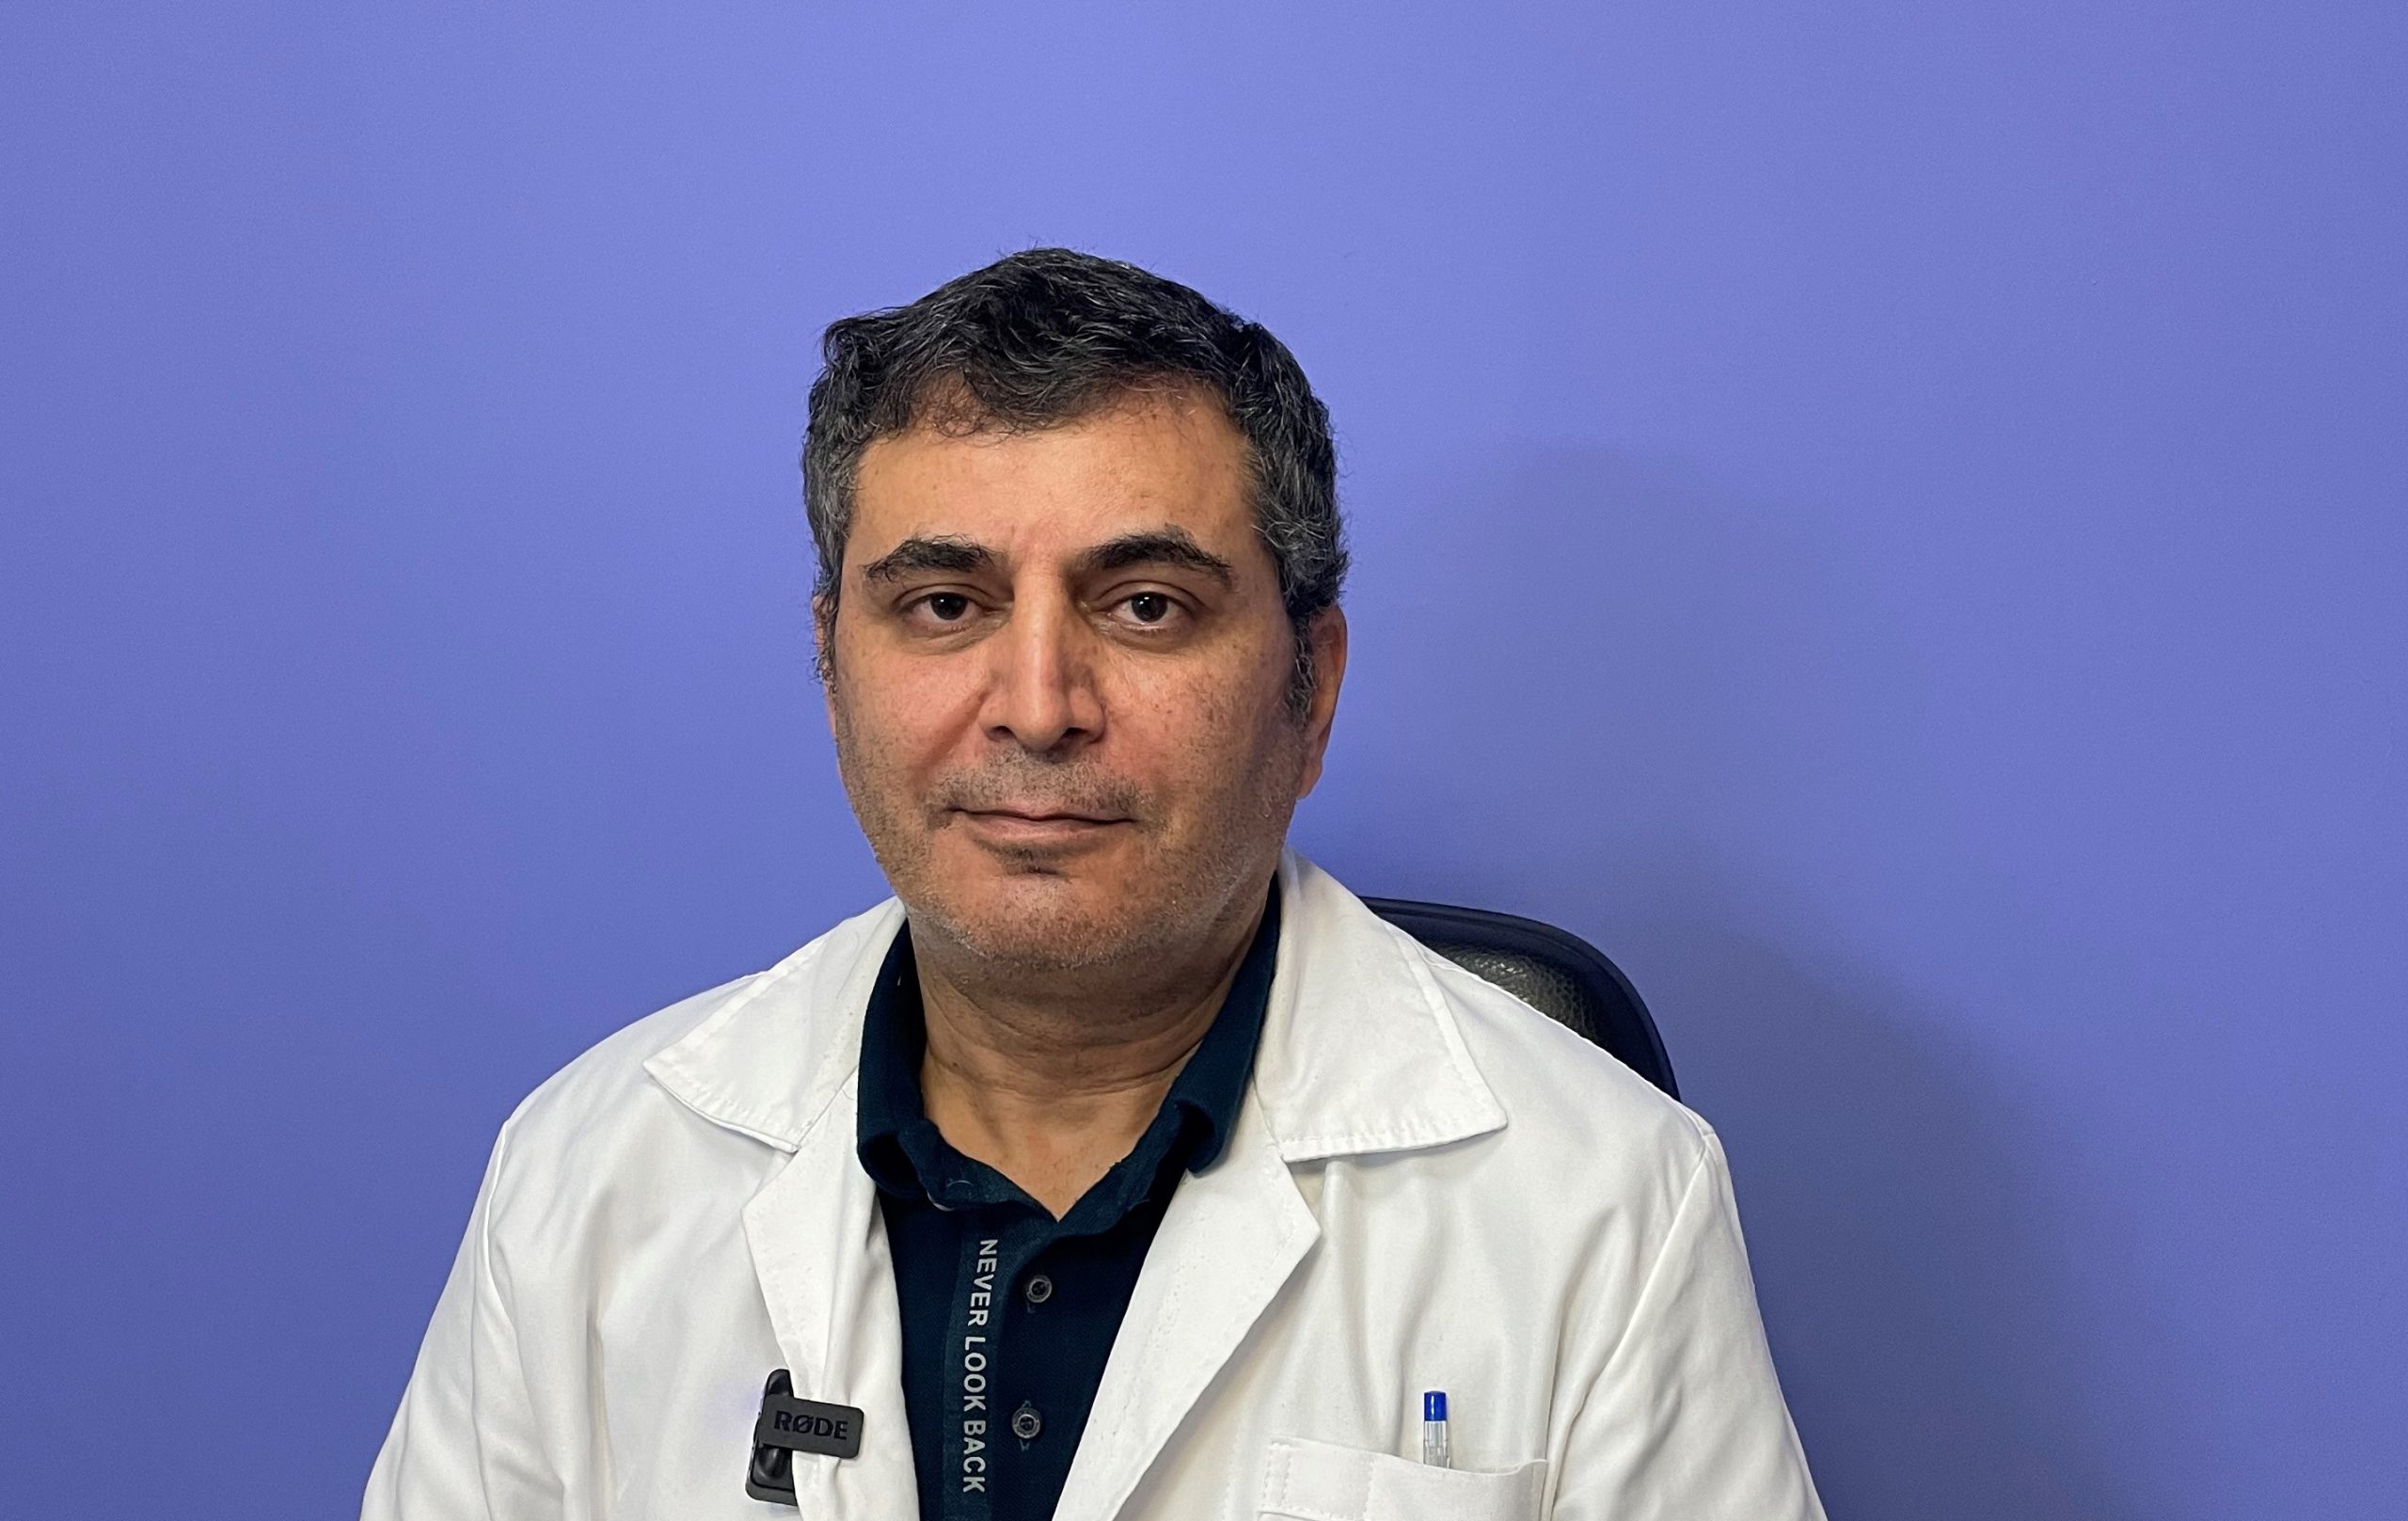 Dr. Amir Hossein Zohraei